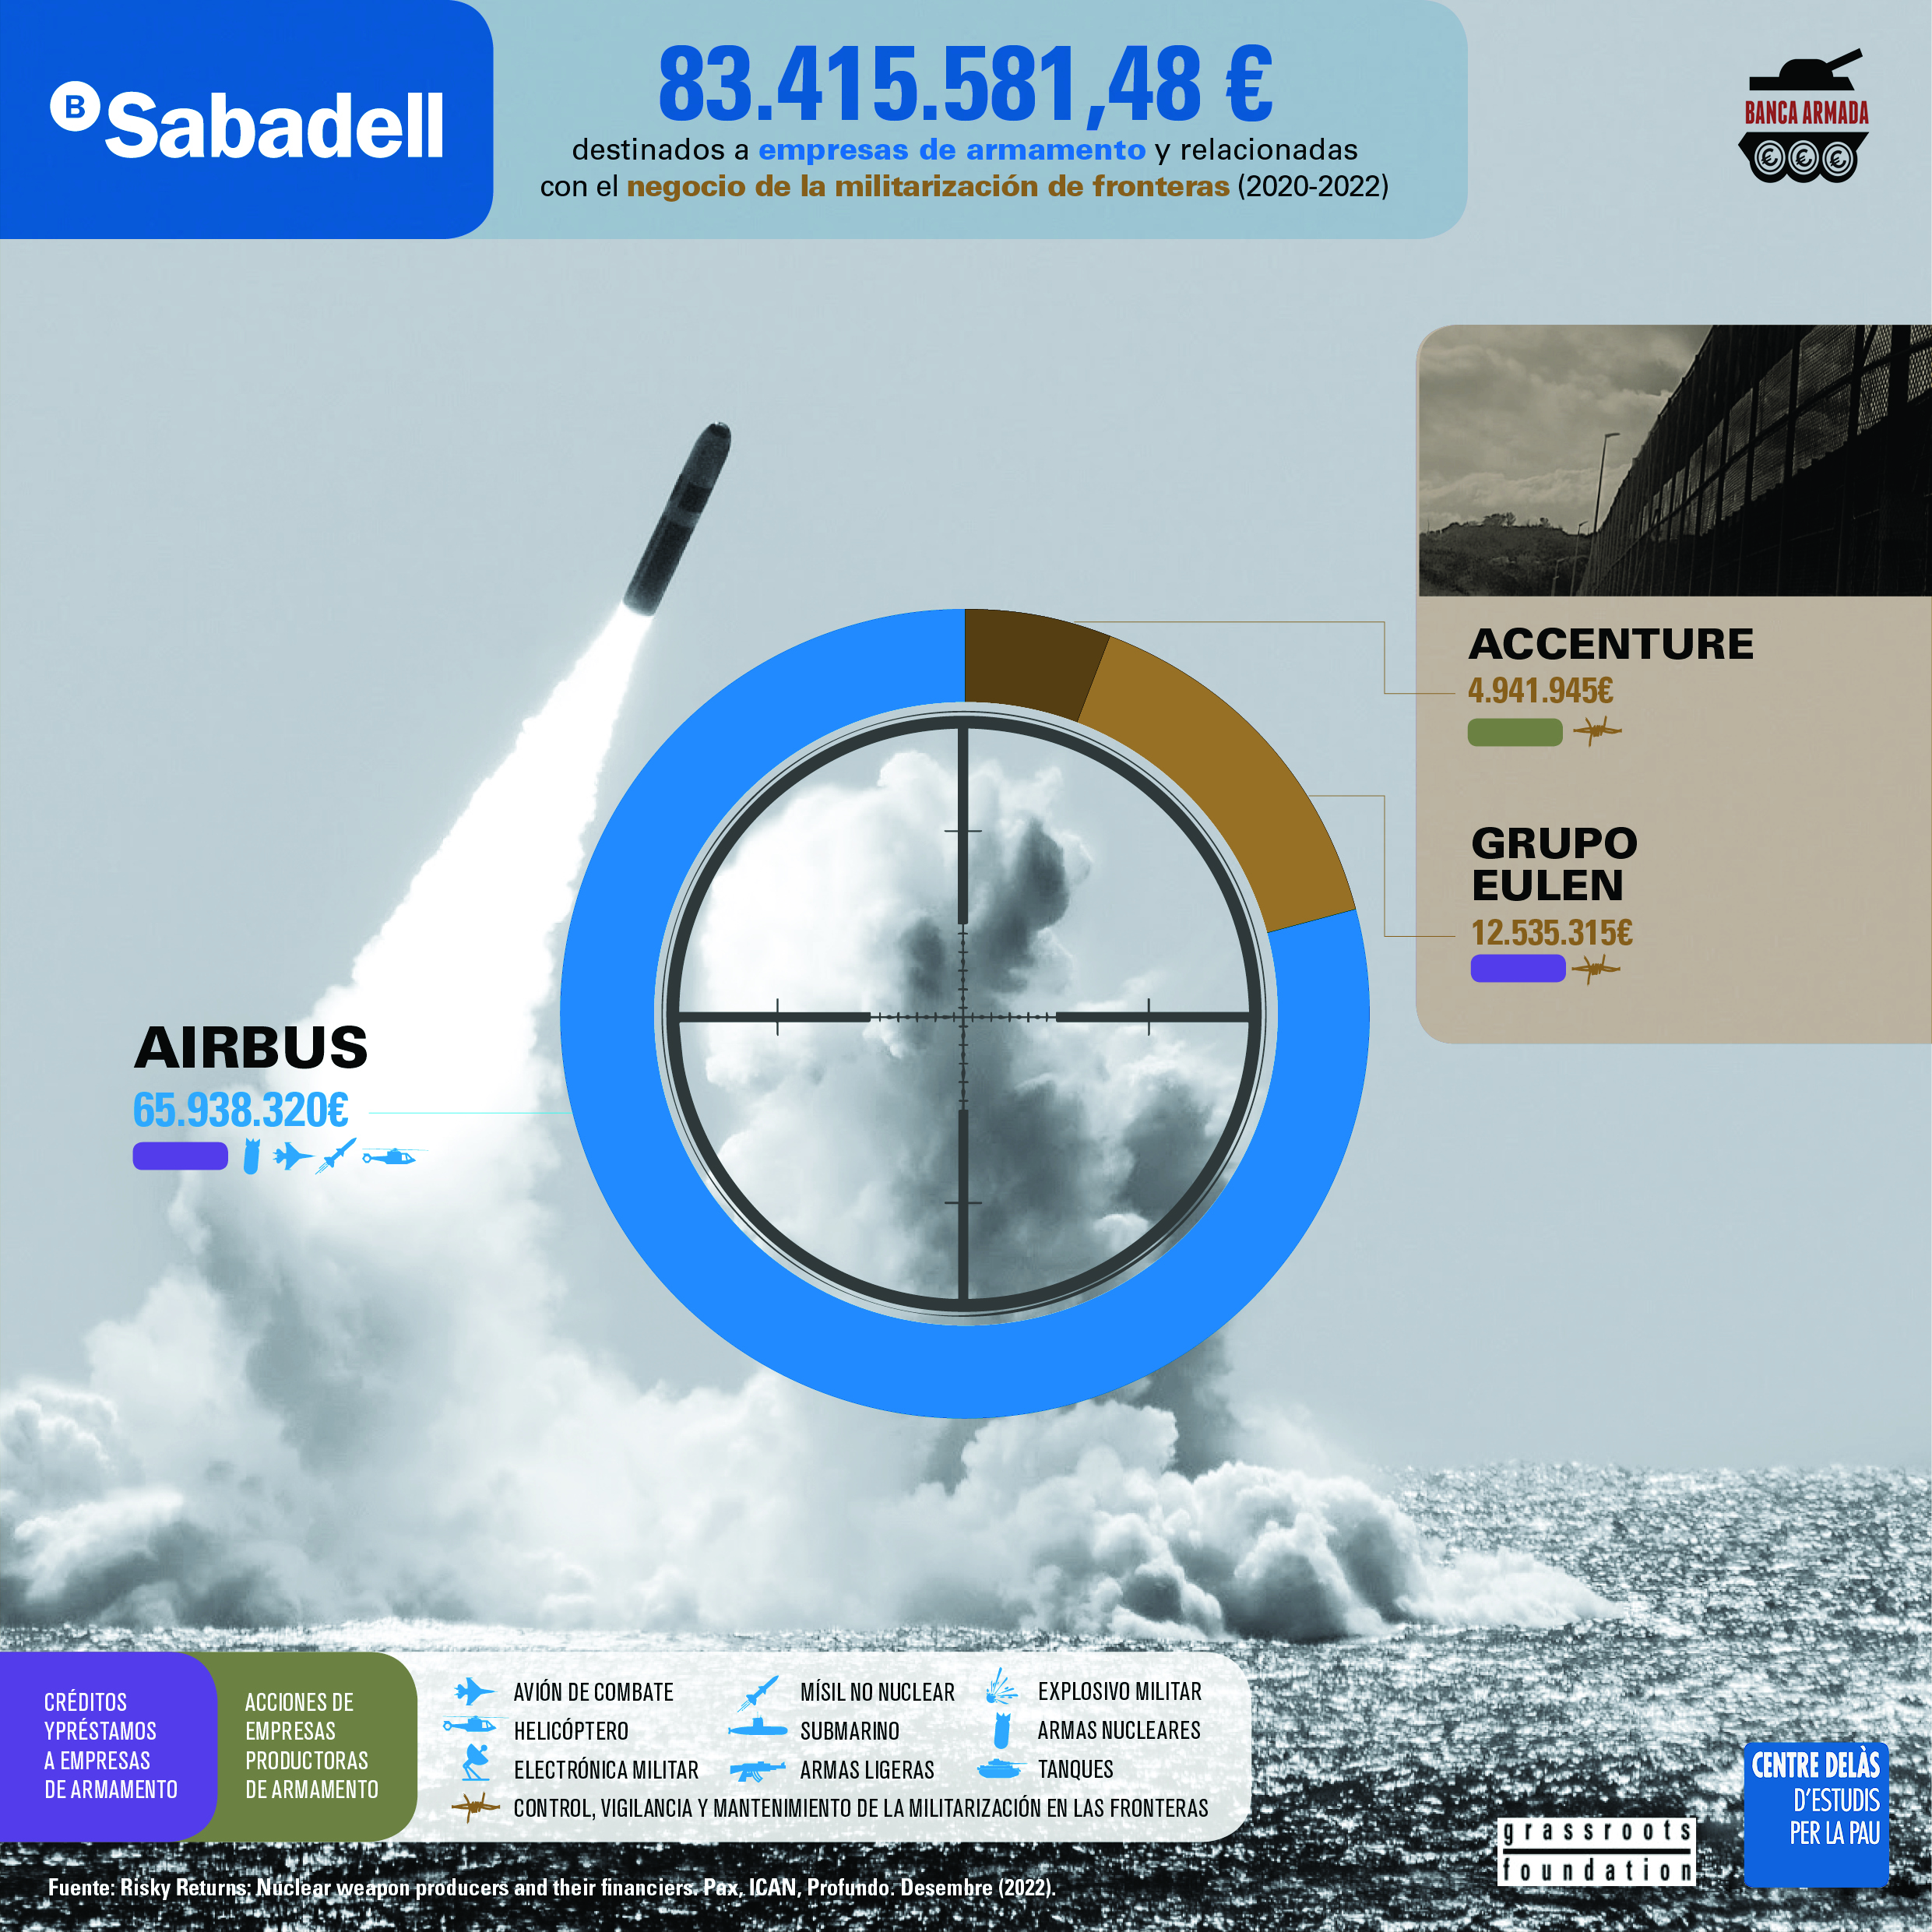 Infografía “Banco Sabadell: financiación a empresas de armamento y relacionadas con el negocio de la militarización de fronteras (2020-2022)”